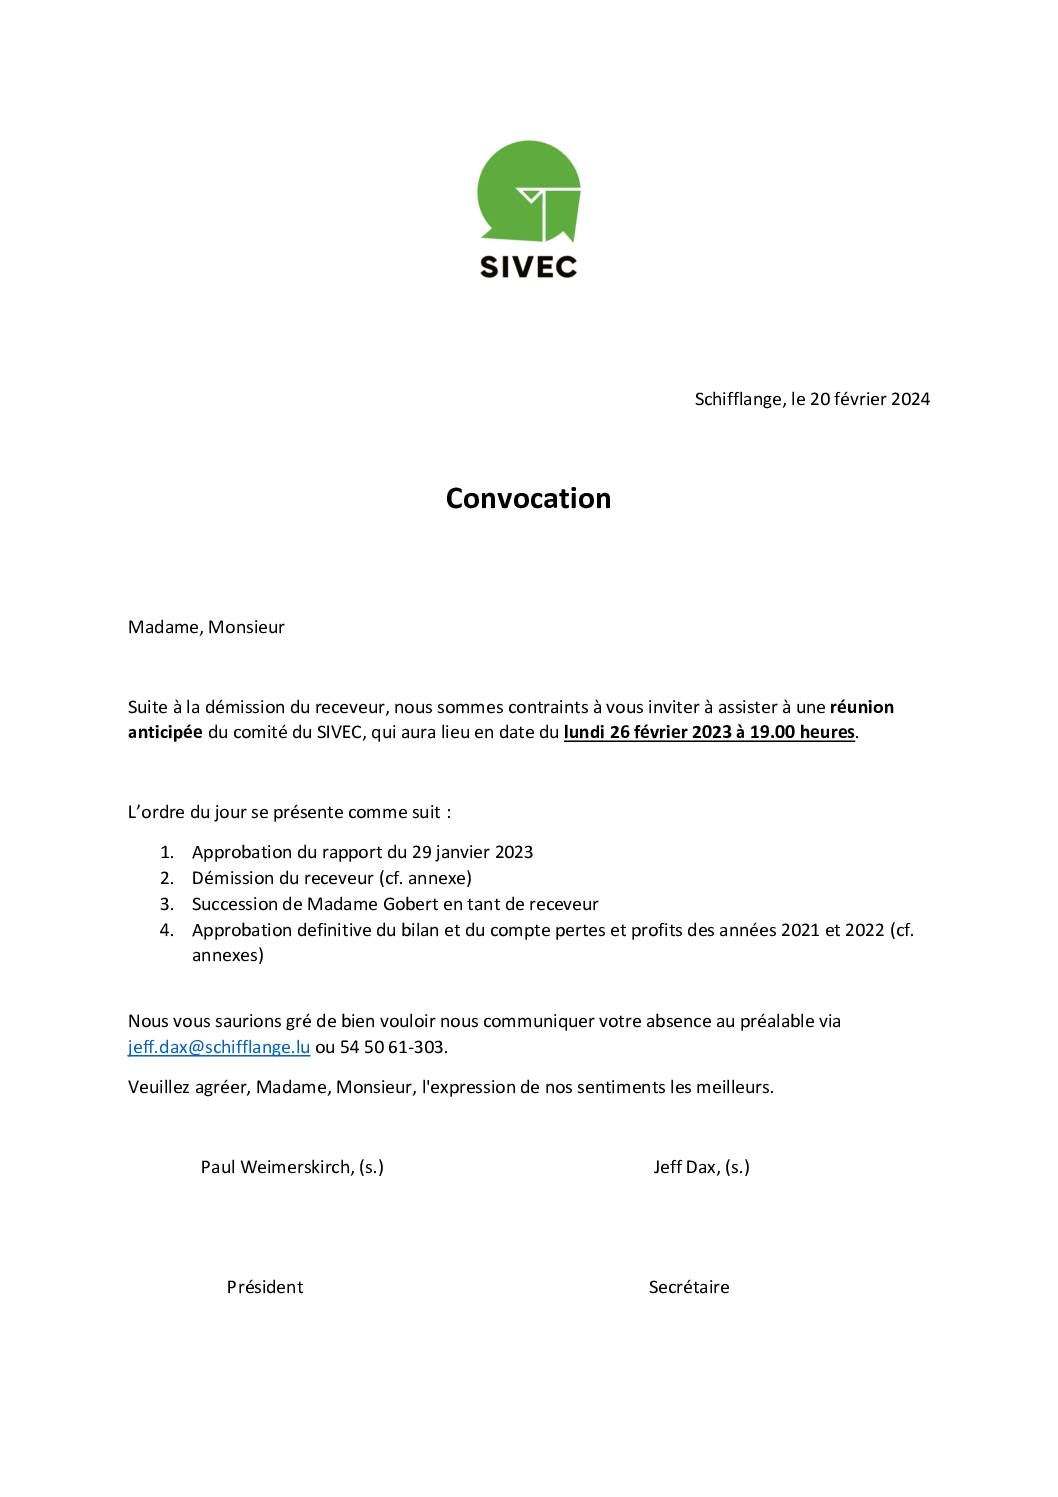 Convocation à la réunion anticipée du comité du SIVEC – 26.02.2024